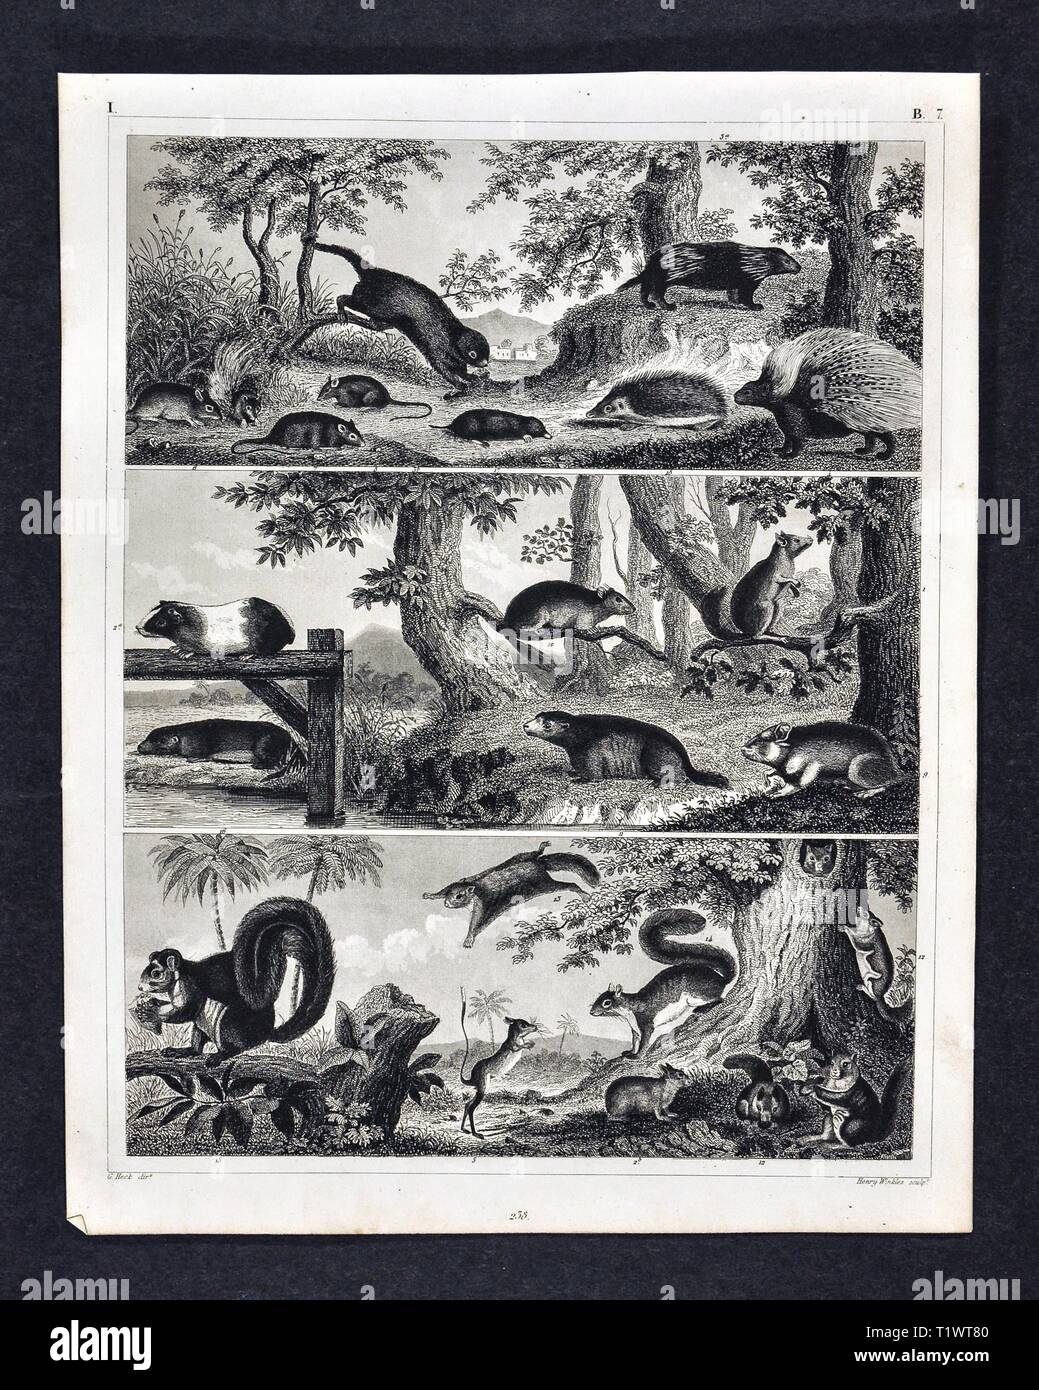 1849 Zoologische Drucken - Wildtiere - Säugetiere verschiedene Nagetiere wie Eichhörnchen, Igel, Igel, Maus, Kaninchen und andere Stockfoto